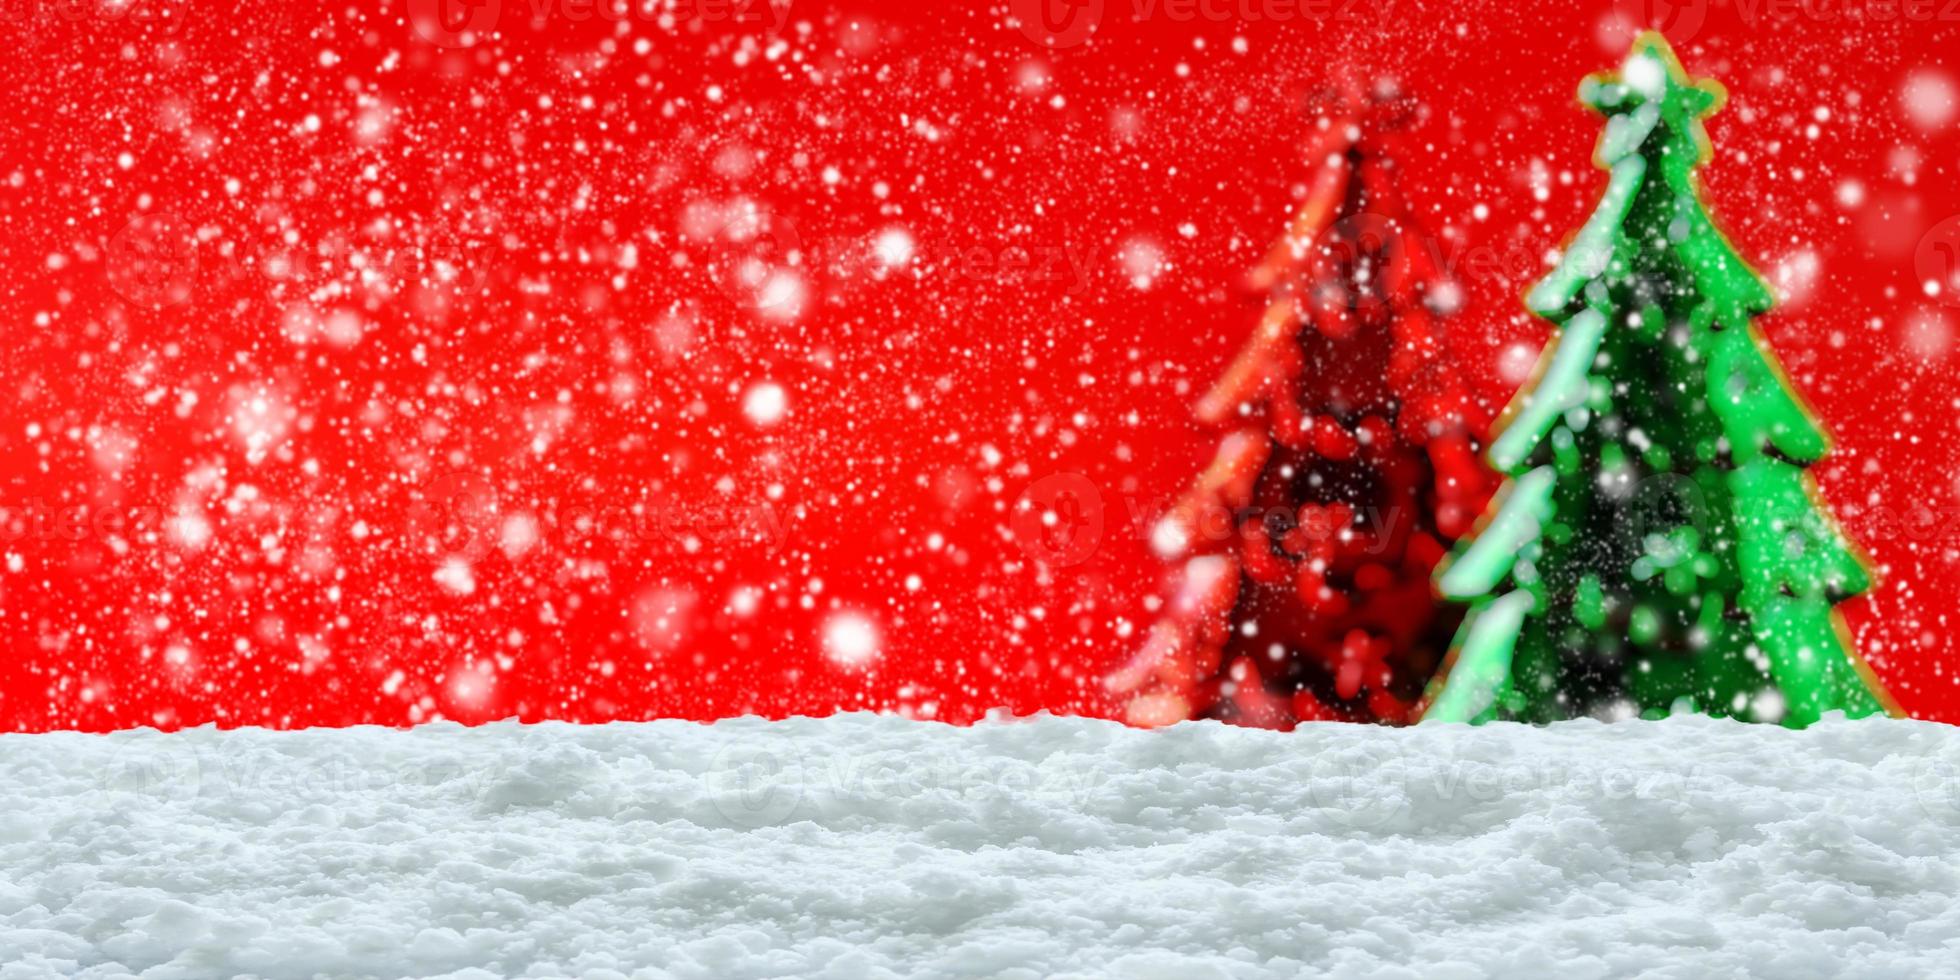 tömma vit snö med fläck jul träd bakgrund foto